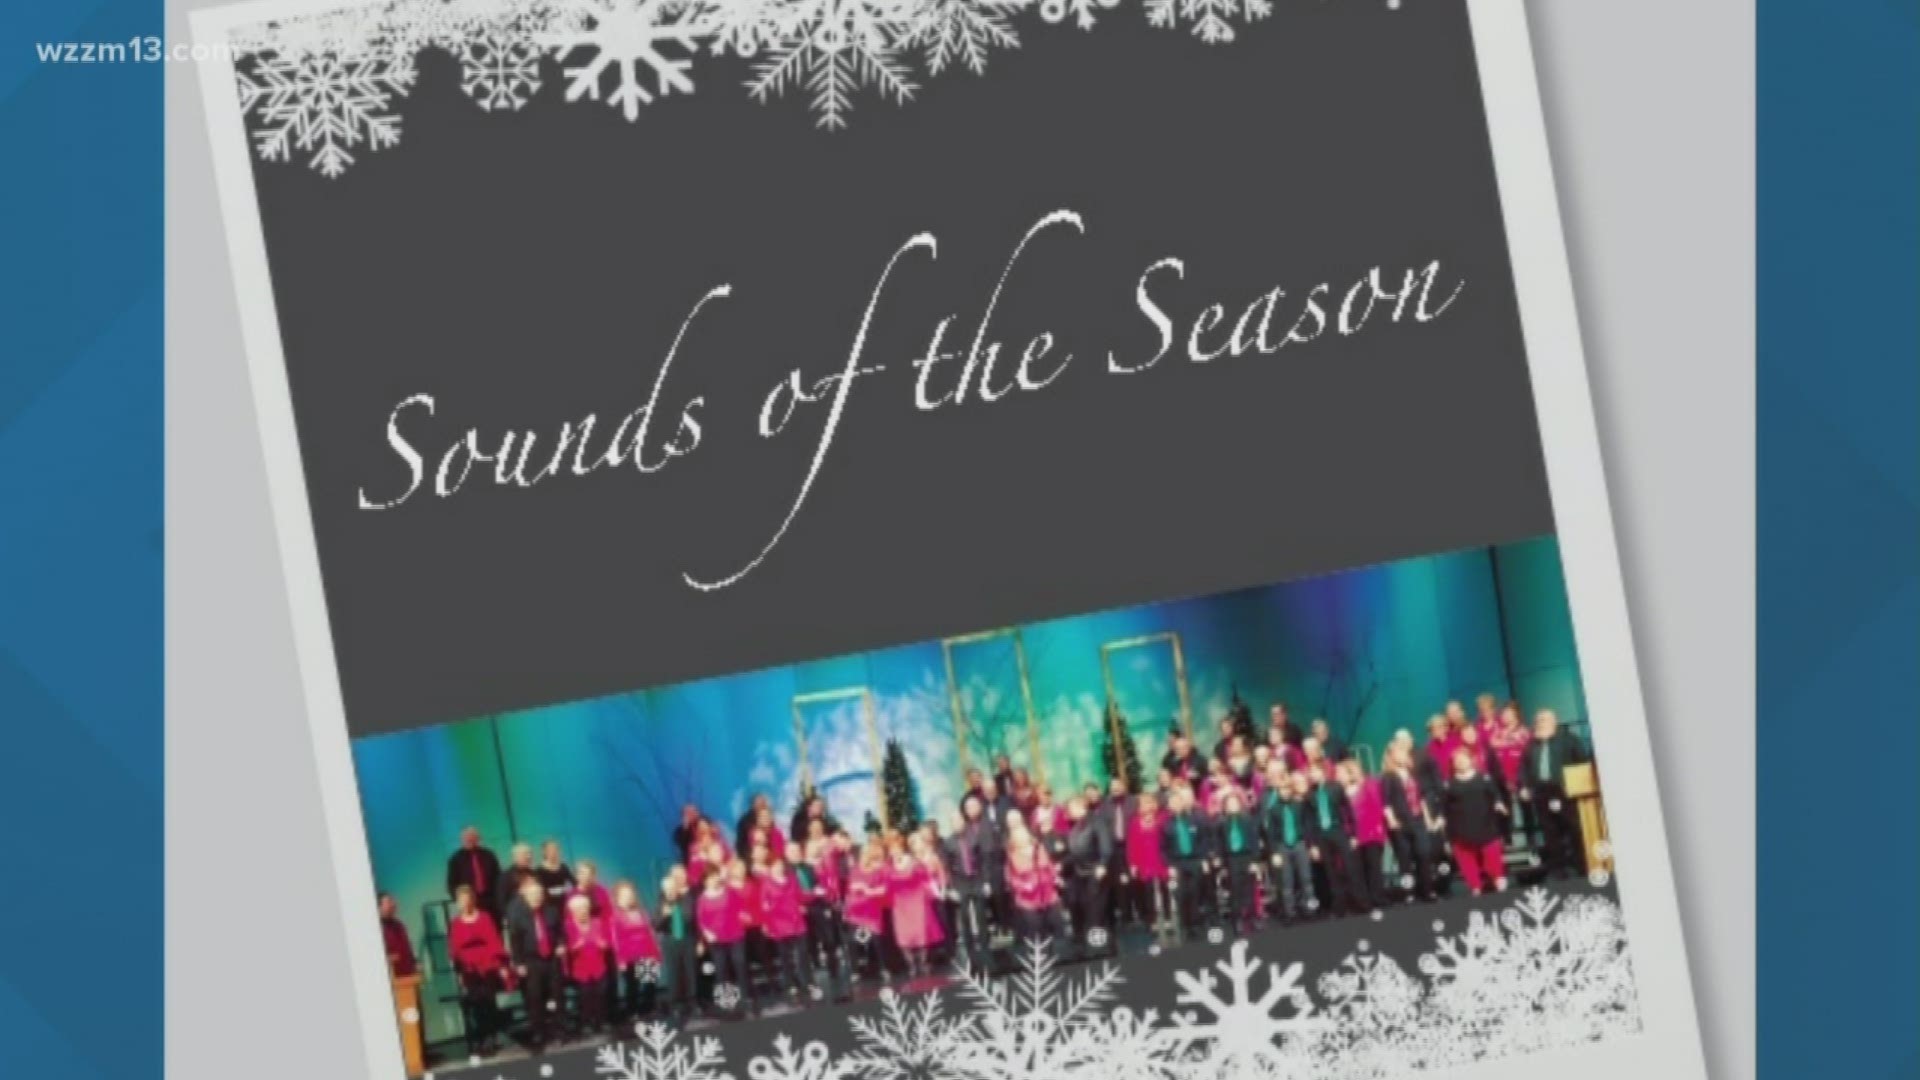 Sweet Adelines "Sounds of the Season"